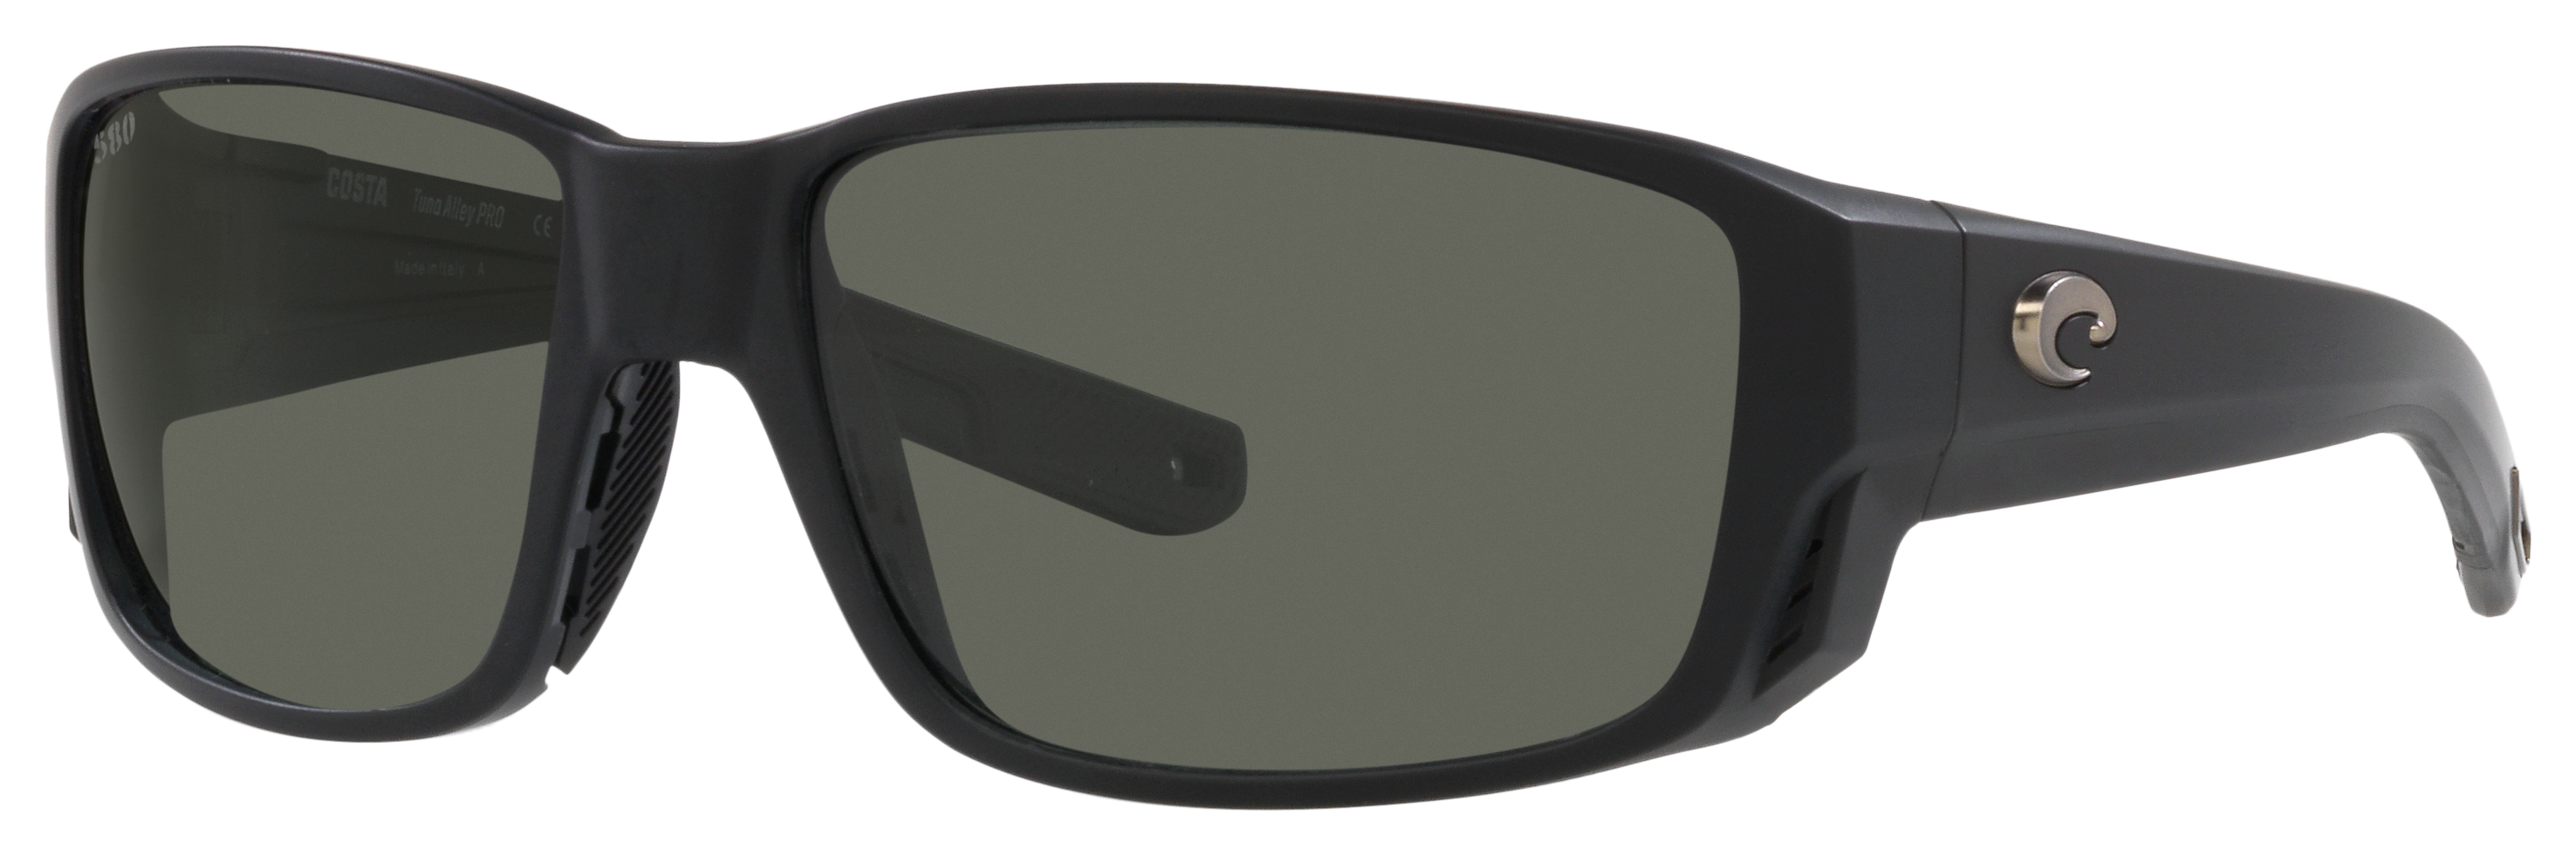 Costa Del Mar Tuna Alley PRO 580G Glass Polarized Sunglasses - Matte Black/Gray - Large